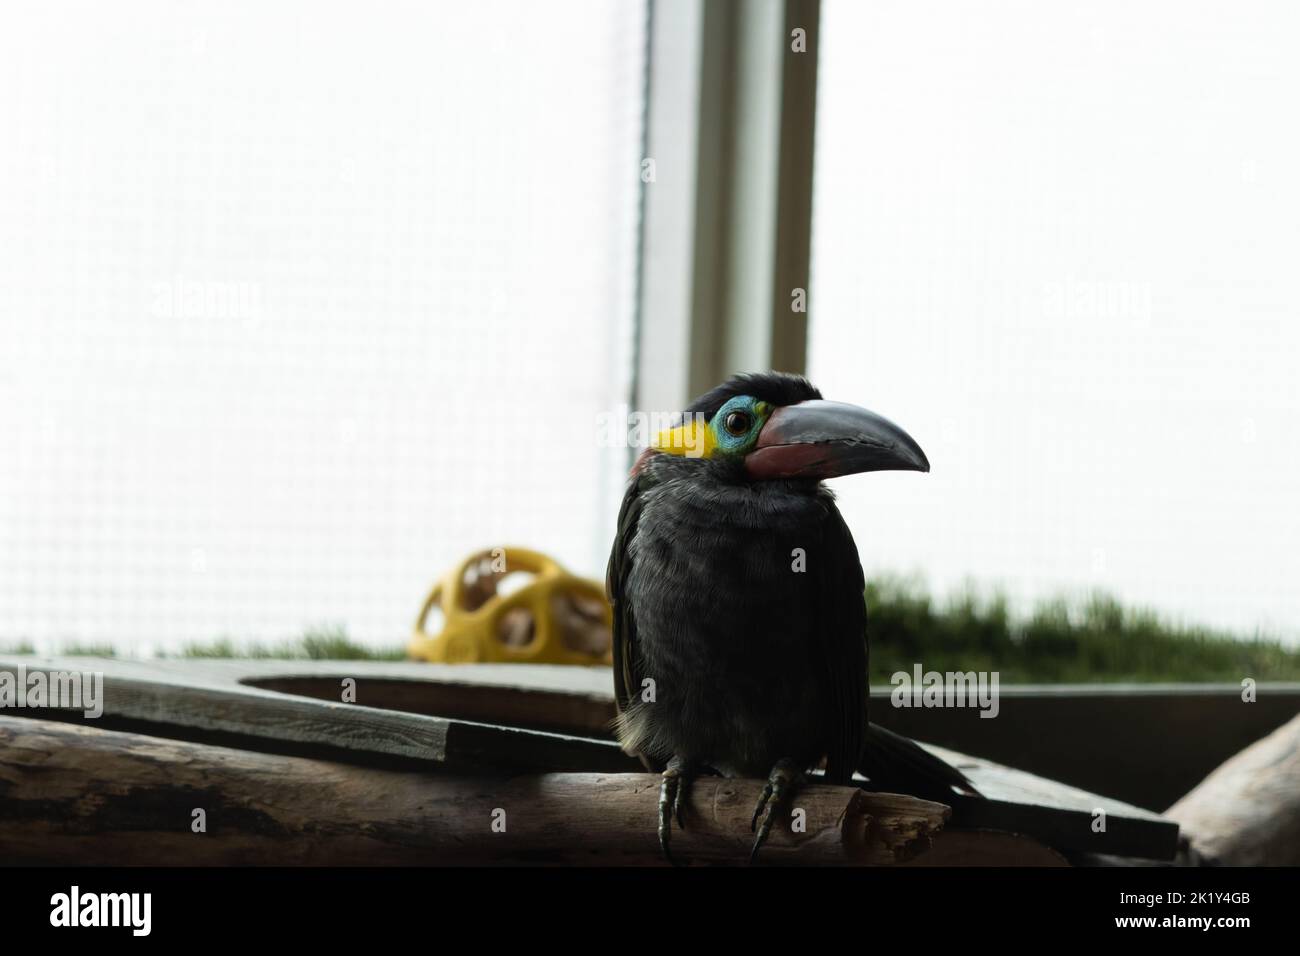 Ein guyana-Tucanet im Niagara-Vogelreich; ein farbenfroher tropischer Vogel, der einem Pinguin ähnelt. Stockfoto